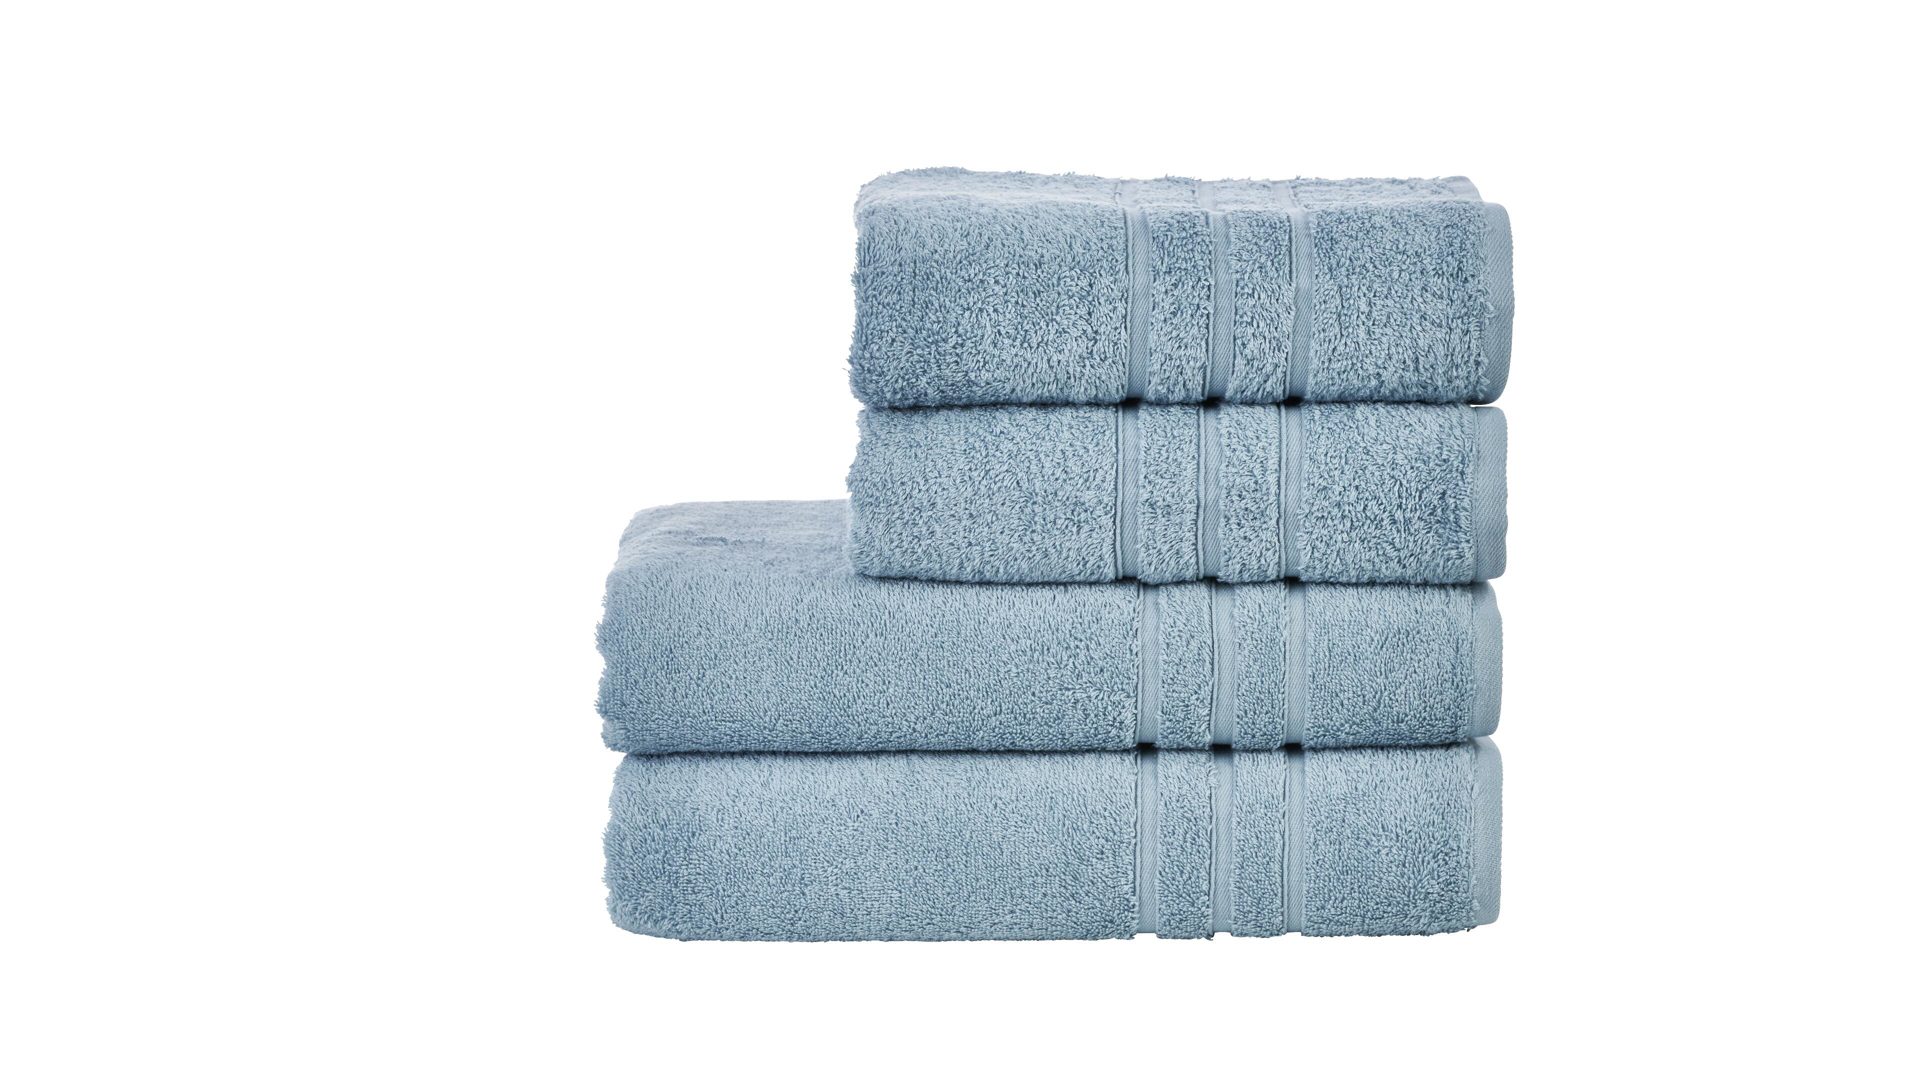 Handtuch-Set Done® be different aus Stoff in Blau DONE® Handtuch-Set Daily Uni oceanfarbene Baumwolle – vierteilig